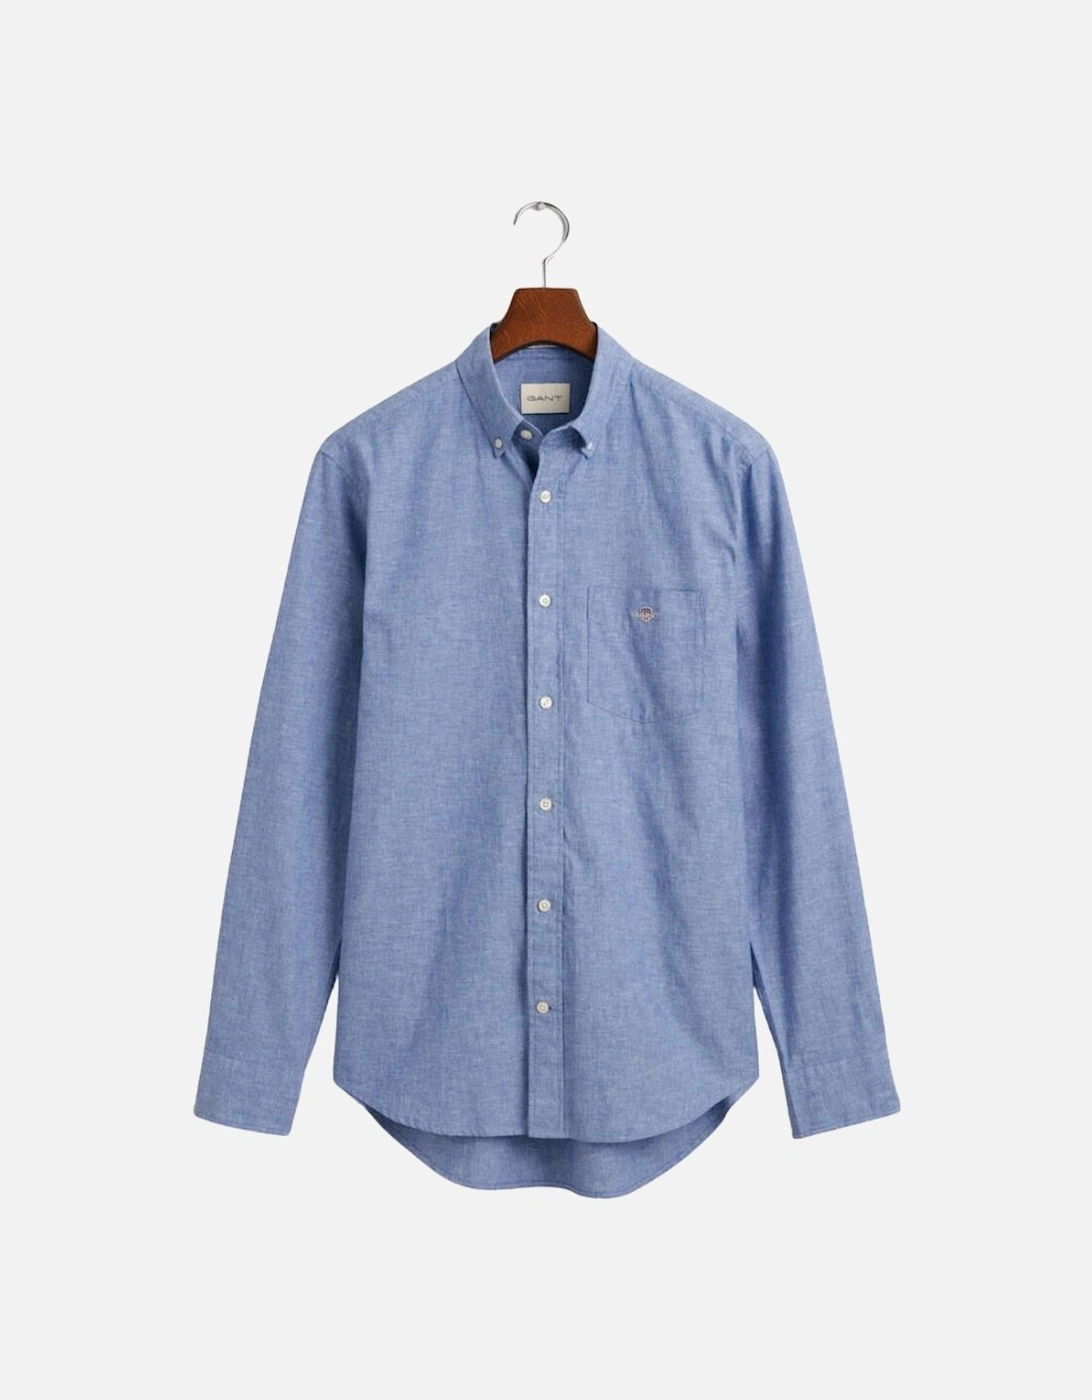 Reg Cotton Linen Shirt - Rich Blue, 6 of 5